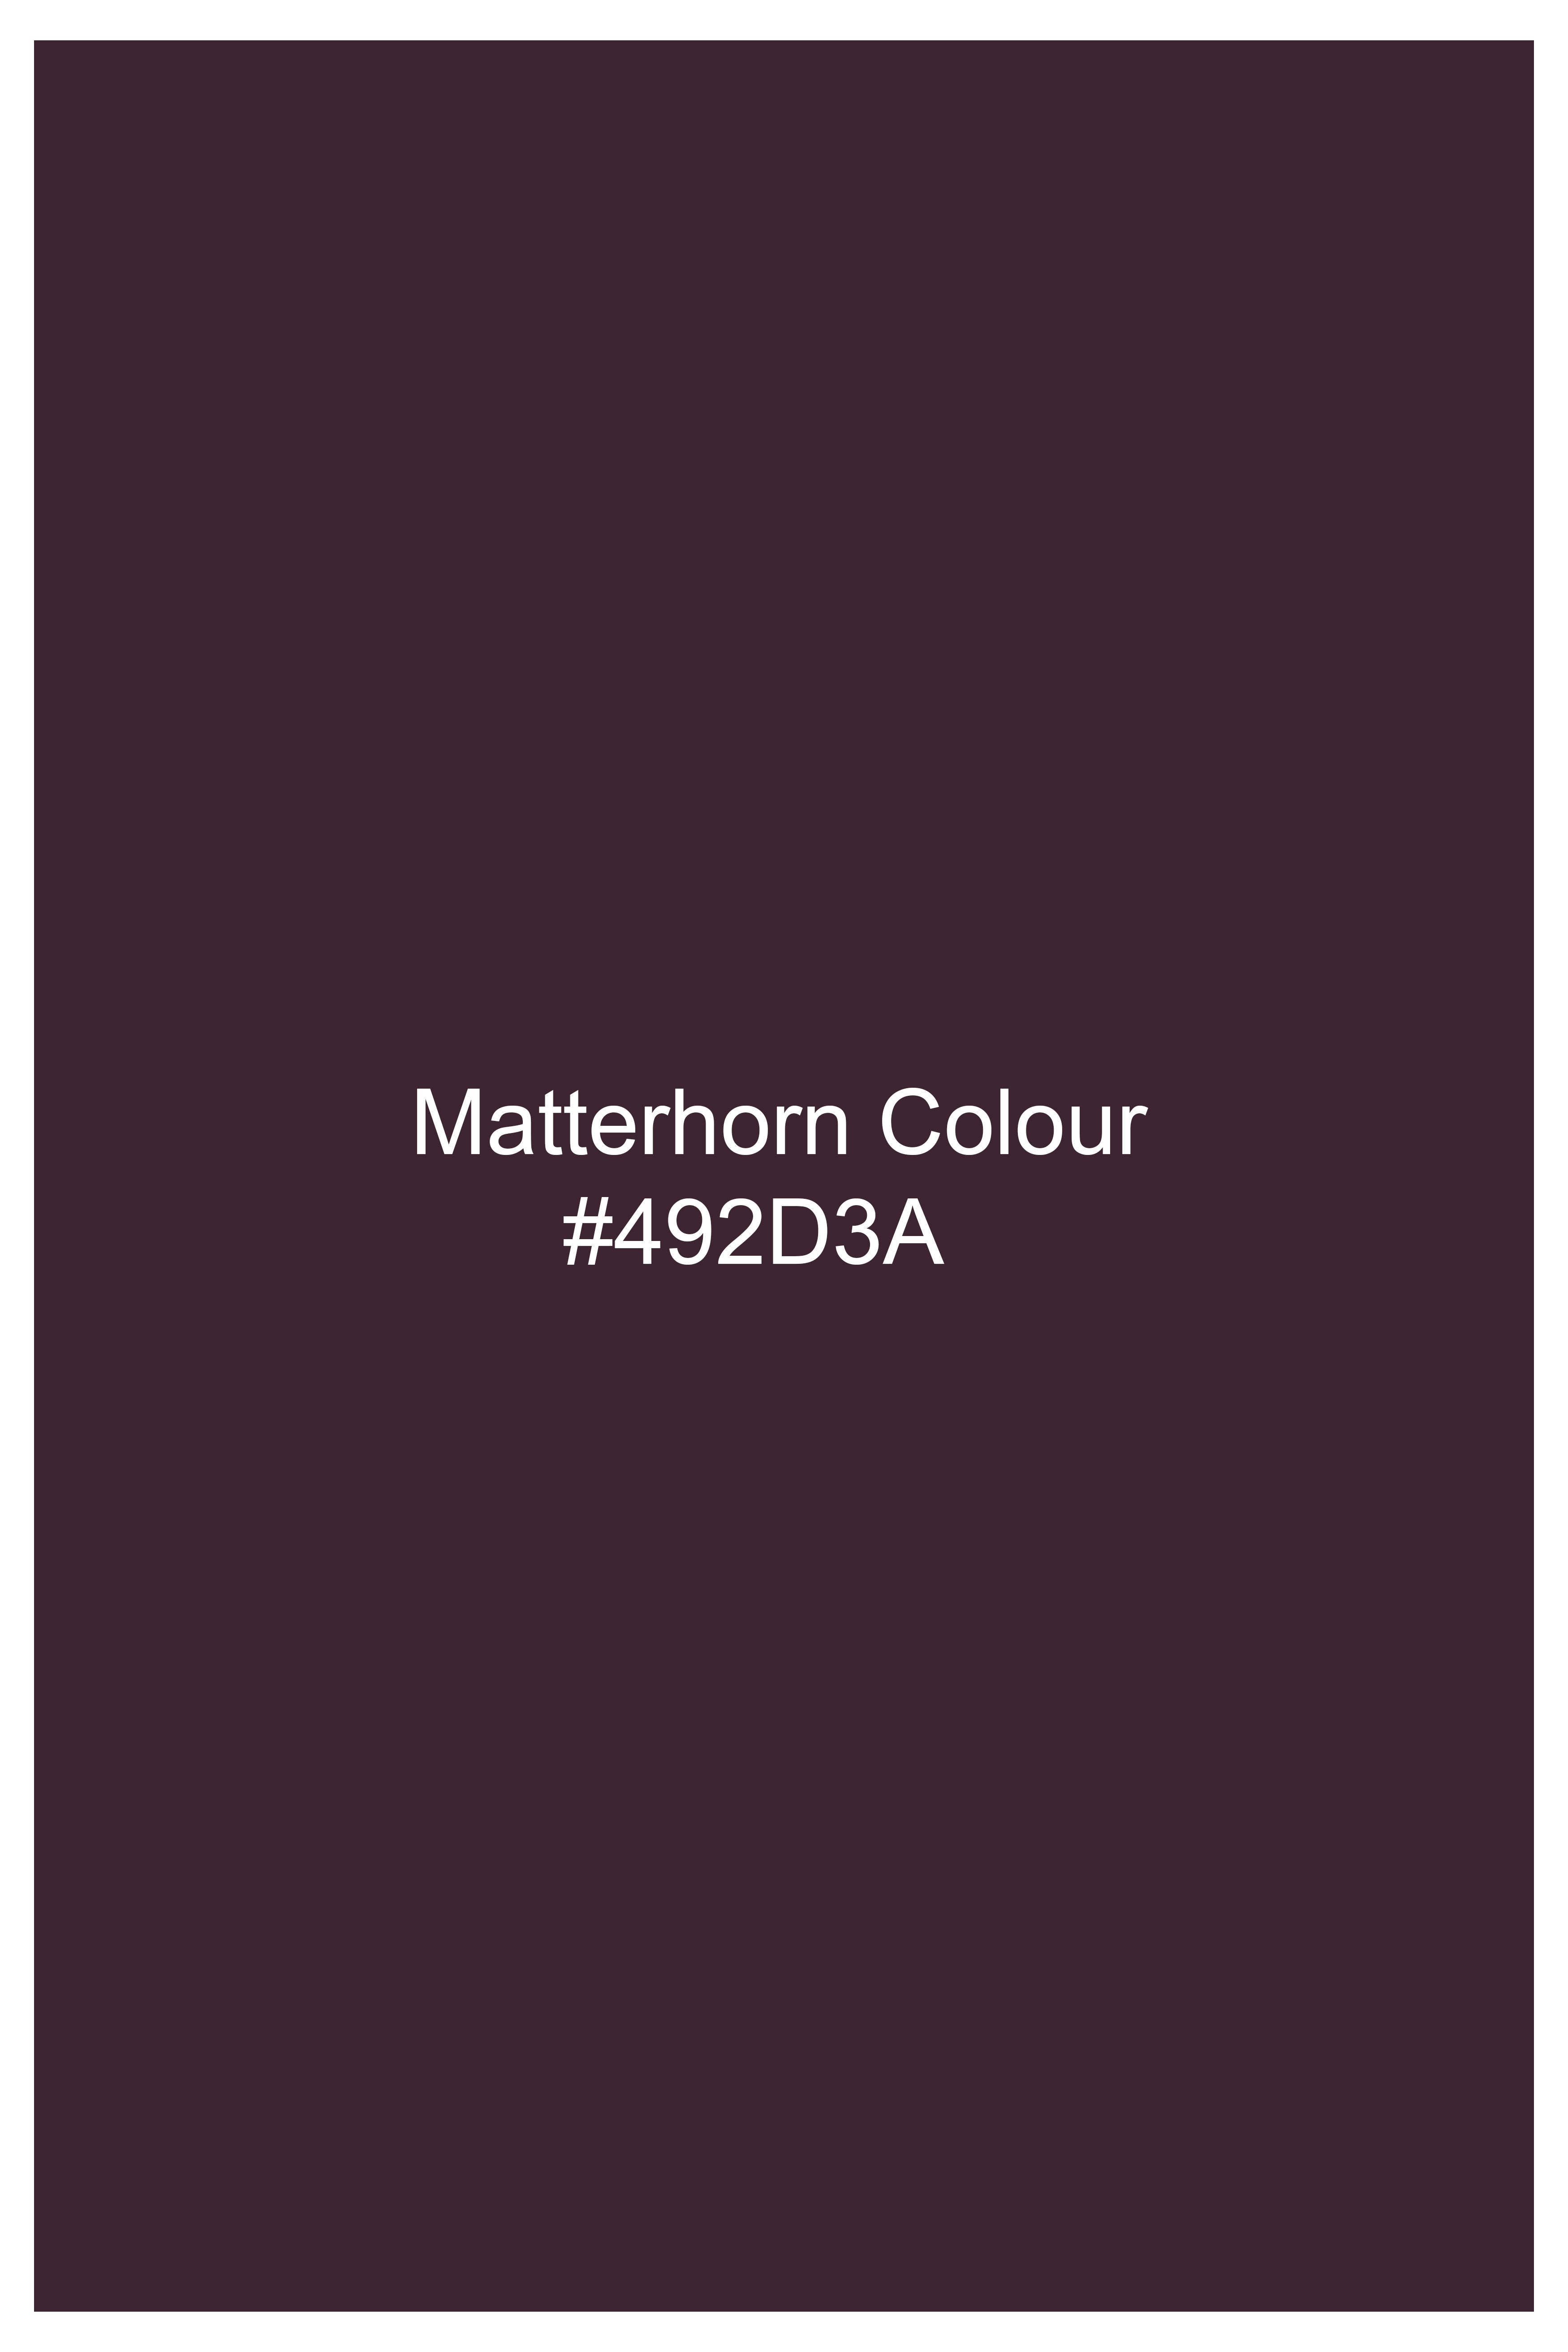 Matterhorn Maroon Wool Rich Designer Suit ST2755-BG-D172-36, ST2755-BG-D172-38, ST2755-BG-D172-40, ST2755-BG-D172-42, ST2755-BG-D172-44, ST2755-BG-D172-46, ST2755-BG-D172-48, ST2755-BG-D172-50, ST2755-BG-D172-52, ST2755-BG-D172-54, ST2755-BG-D172-56, ST2755-BG-D172-58, ST2755-BG-D172-60